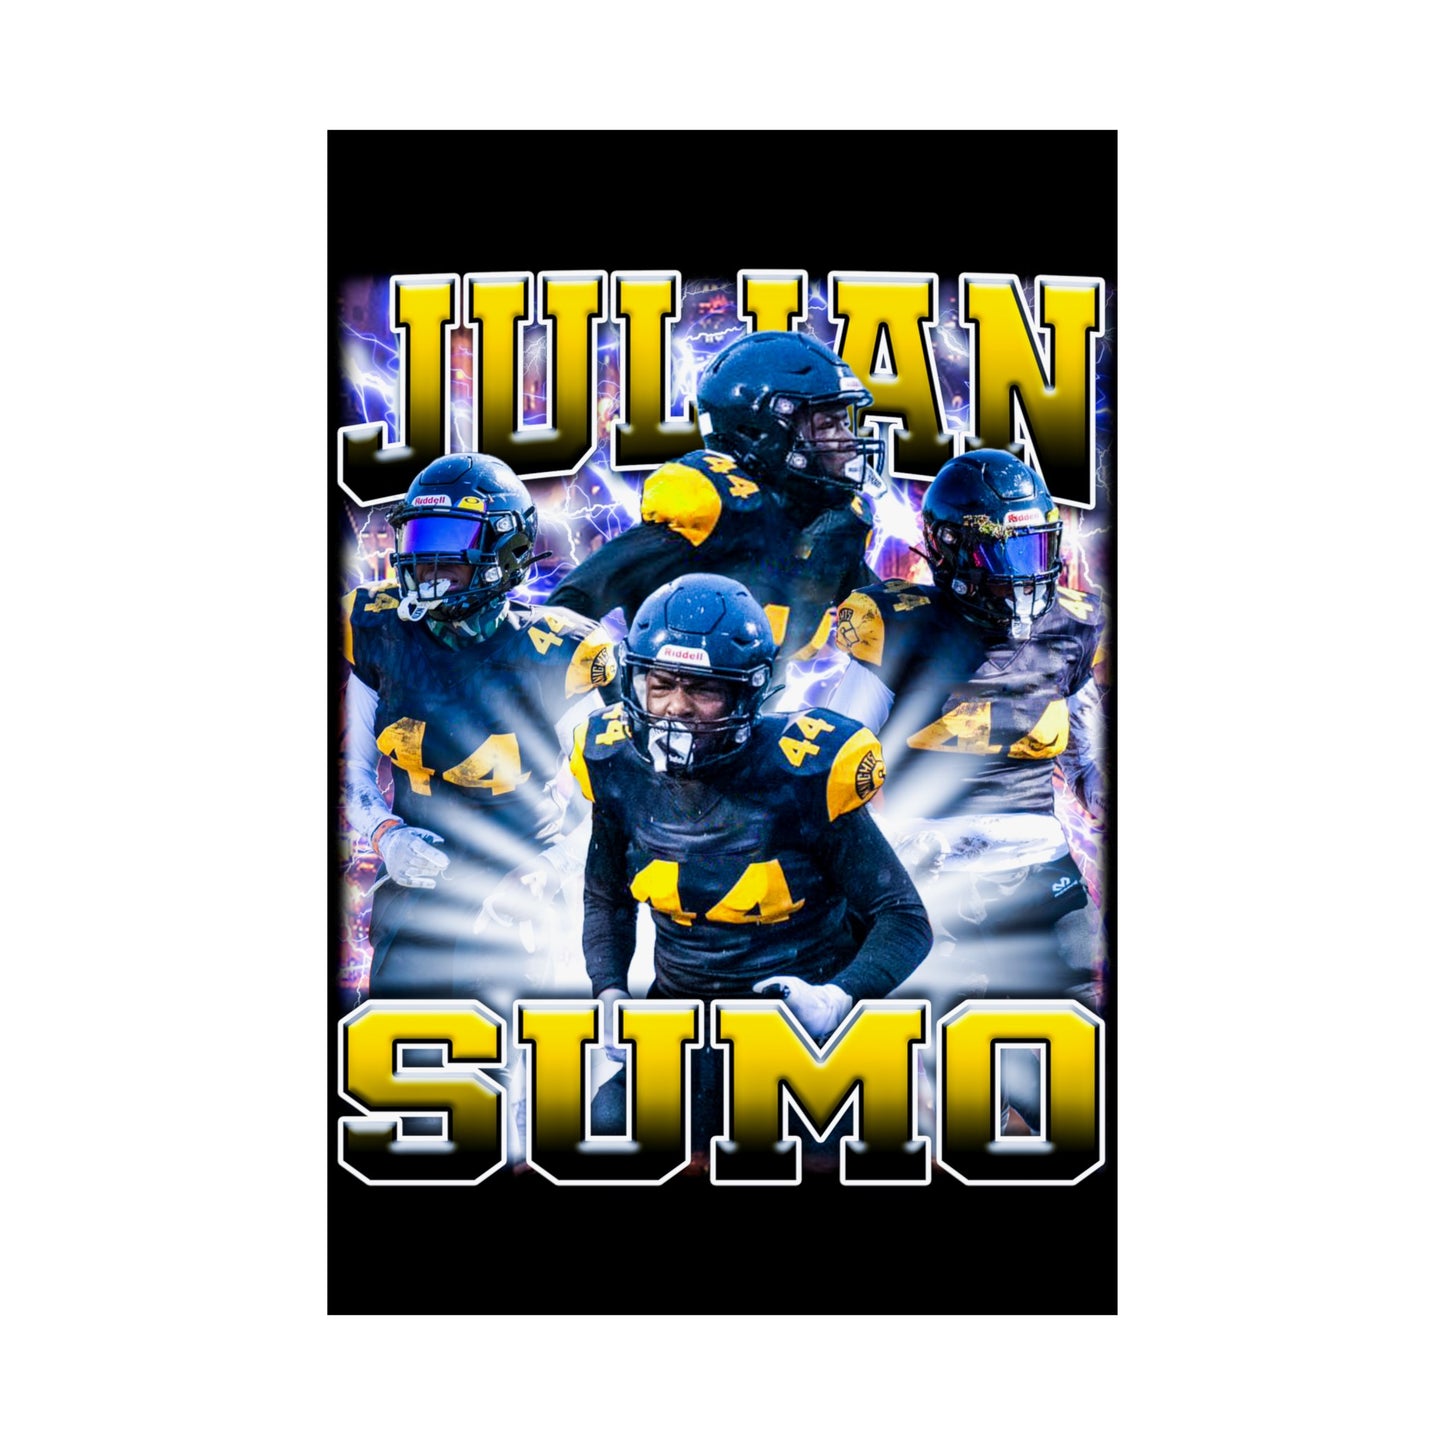 Julian Sumo Poster 24" x 36"